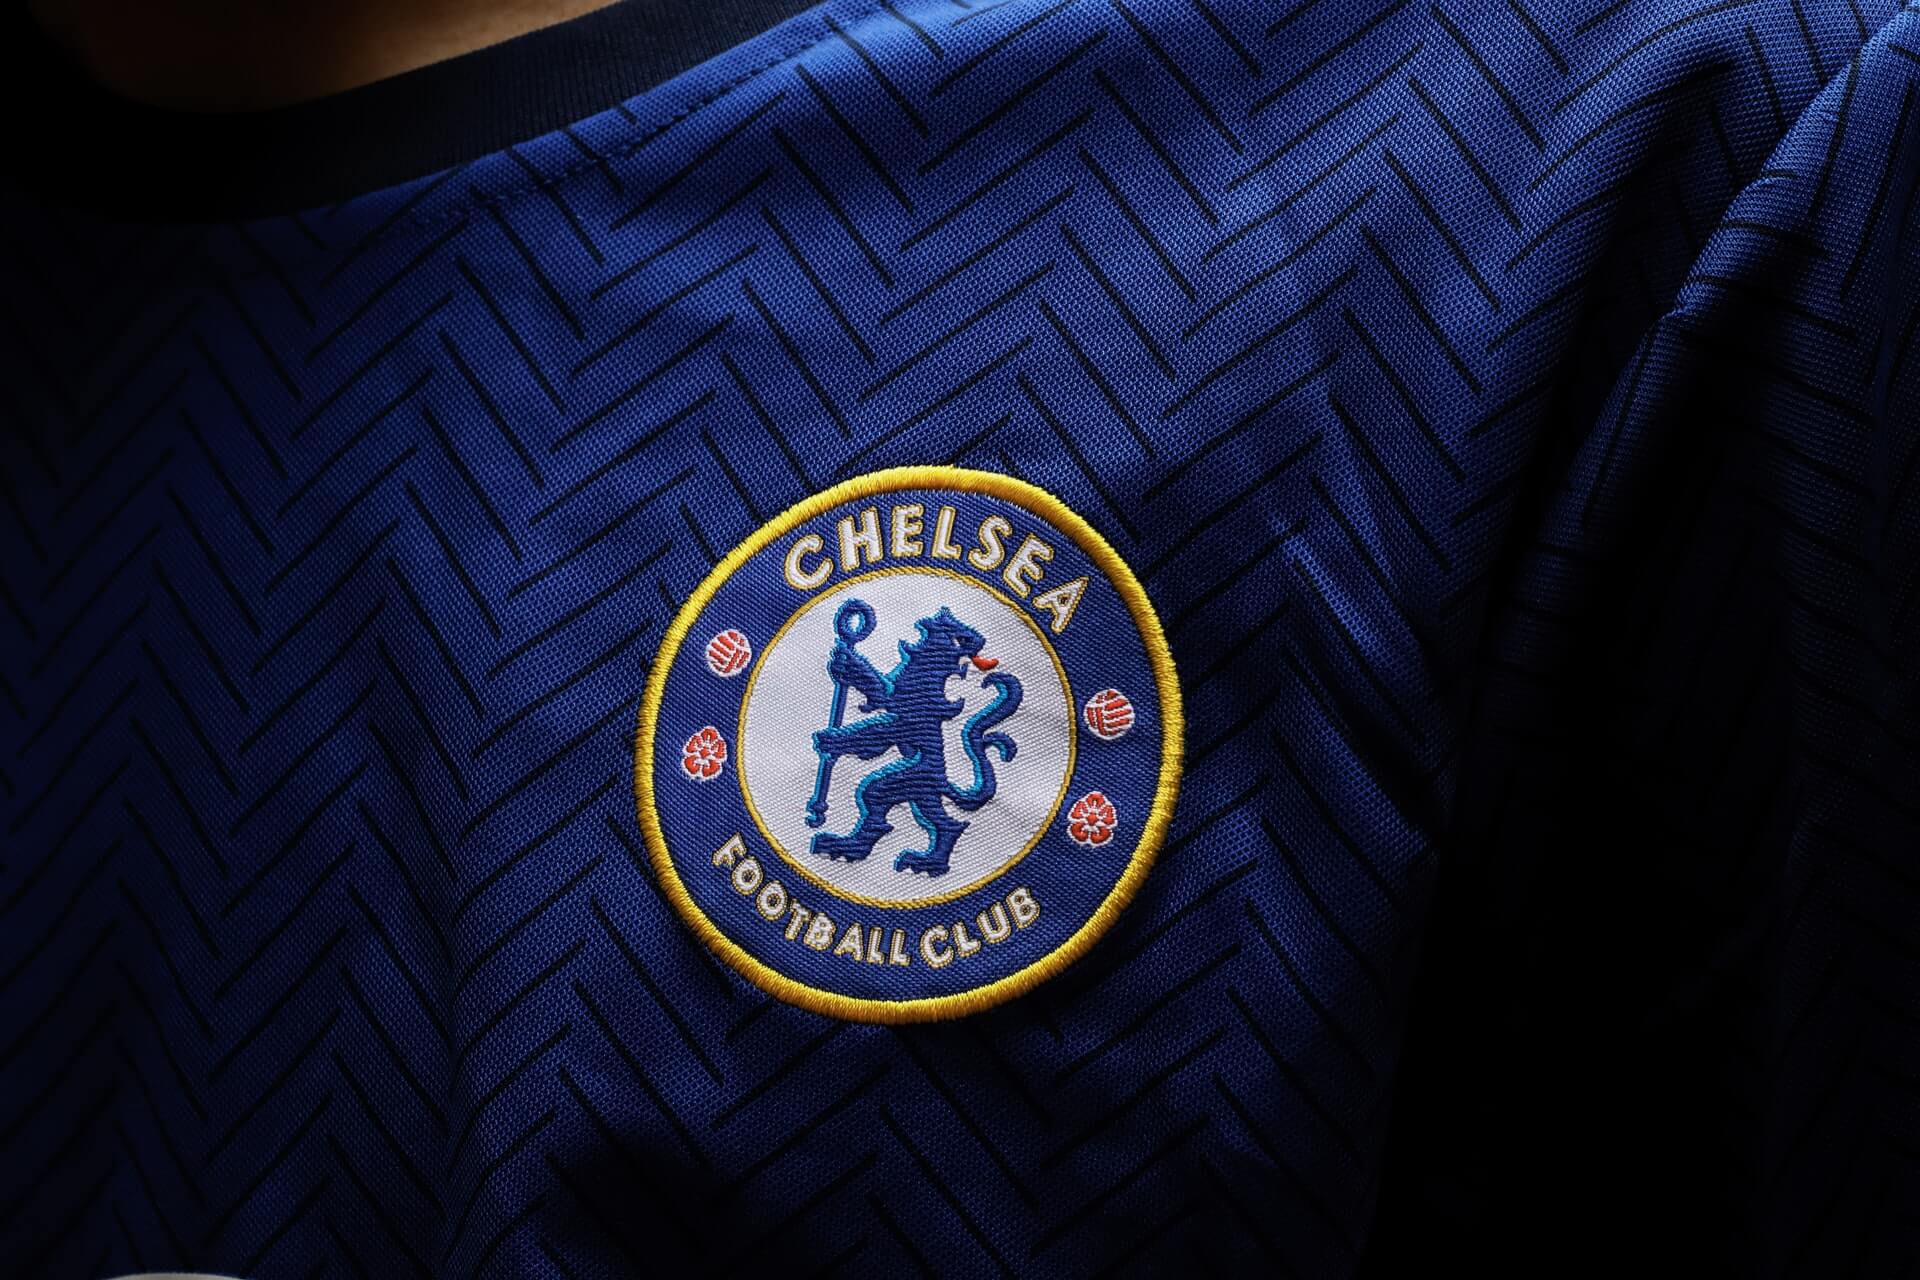 soccermaestros pix Chelsea badge